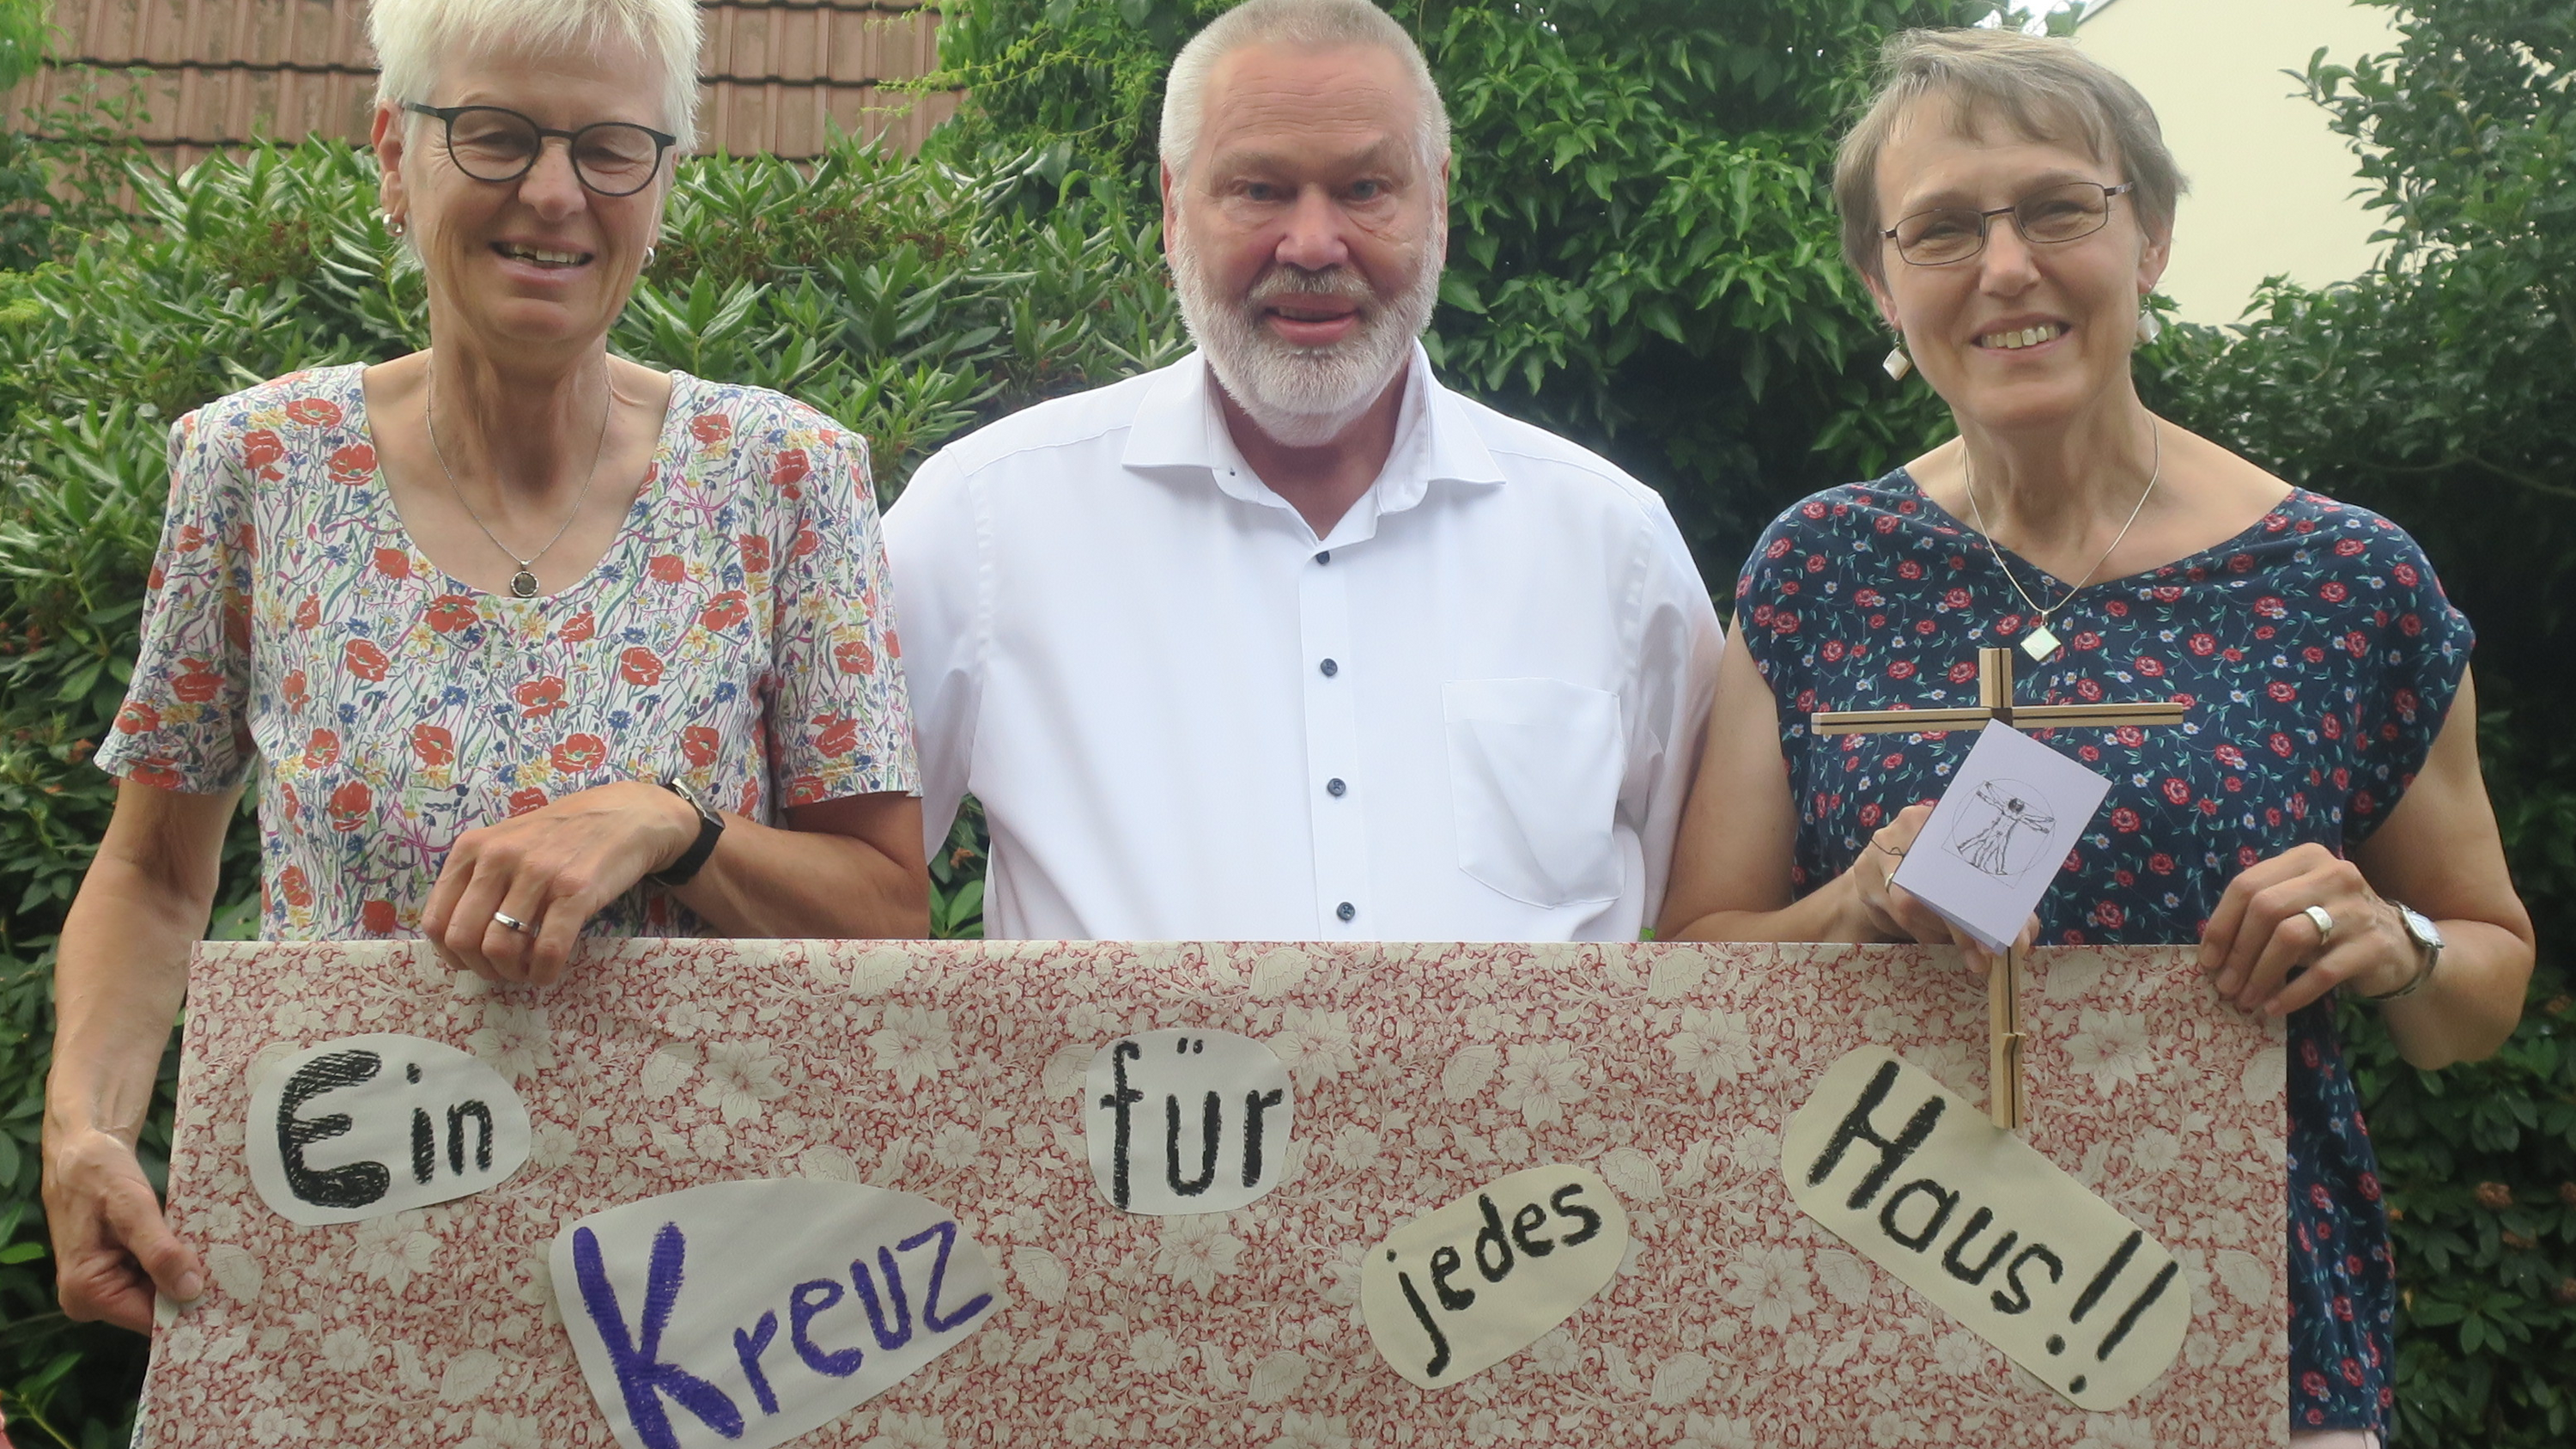 Engagieren sich: Marlies Gerdes-Scheuer (von links), Hartmut Ramke und Karin Voßmann vom Verein "Hilfe für Sudargas" verkaufen Holzkreuze für den guten Zweck.&nbsp; Foto: privat